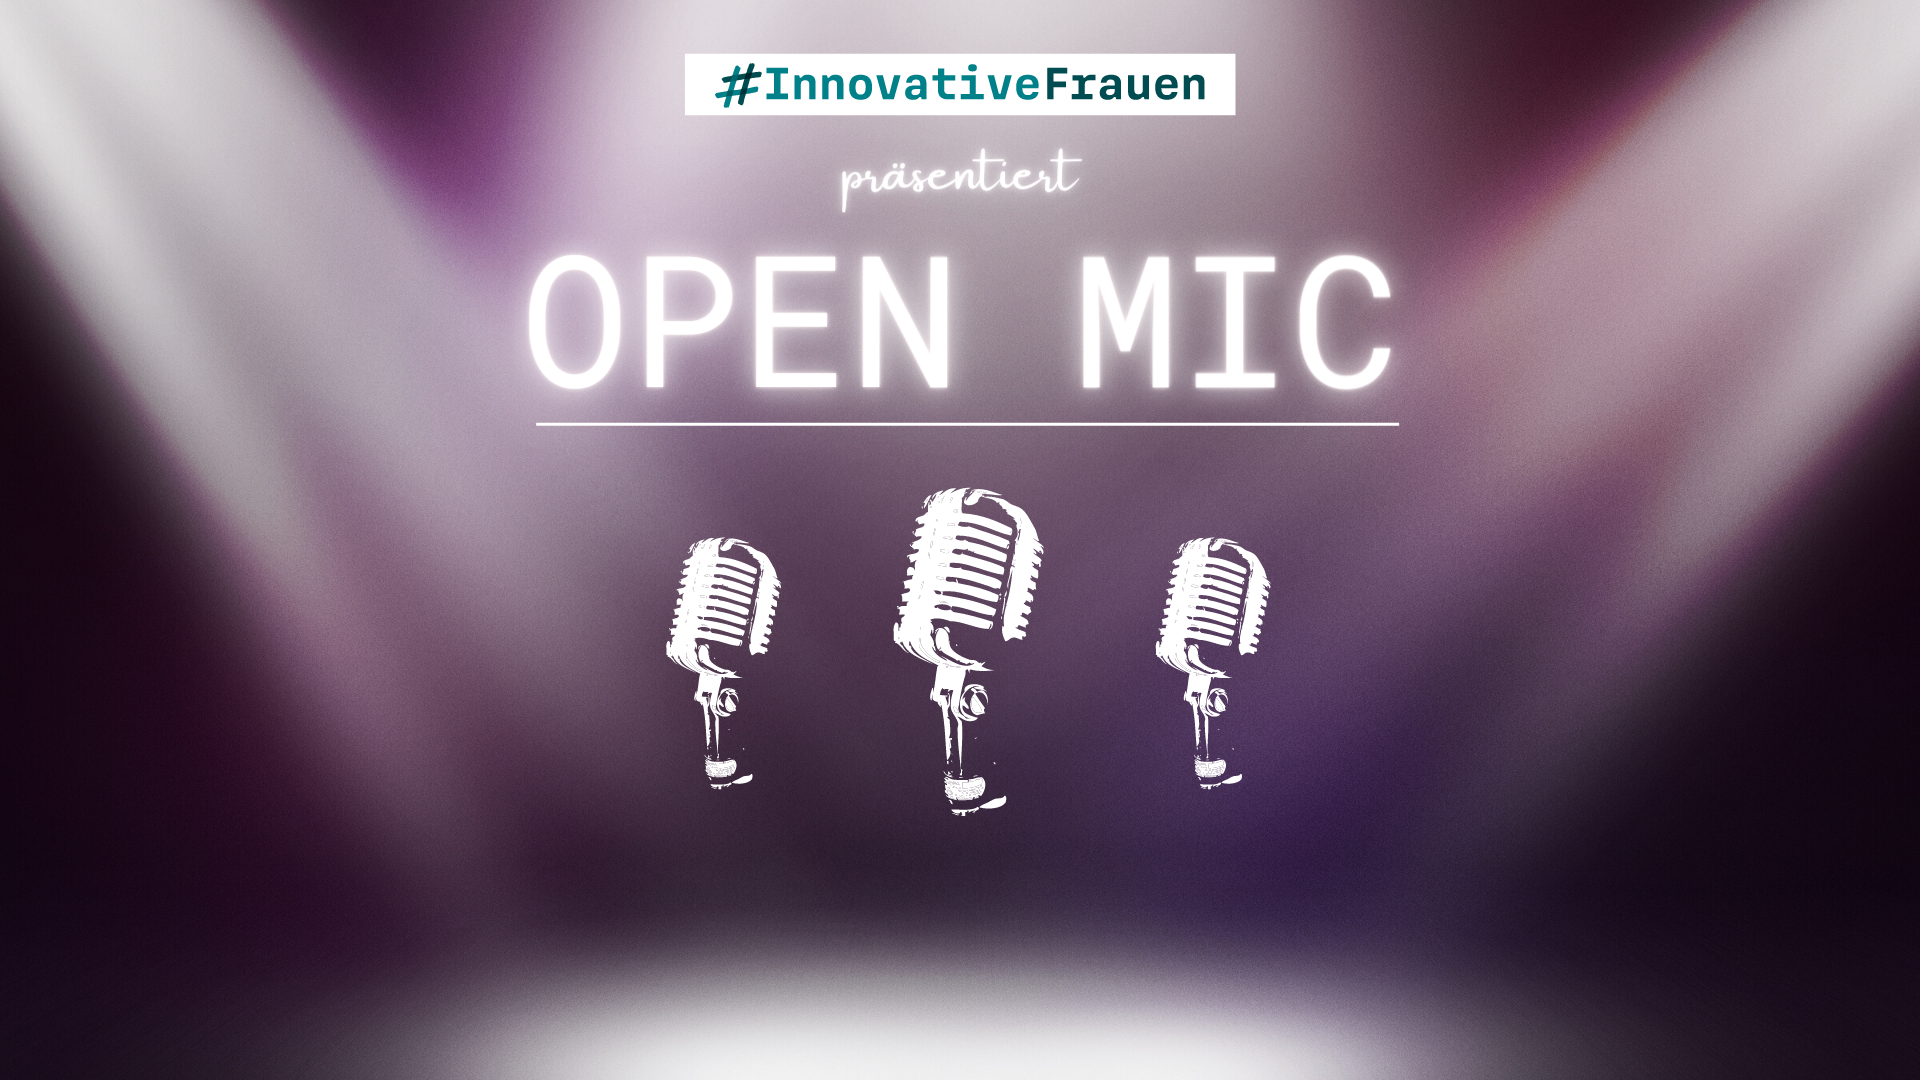 Veranstaltung Open Mic präsentiert von #InnovativeFrauen, im Vordergrund drei Mikrofone